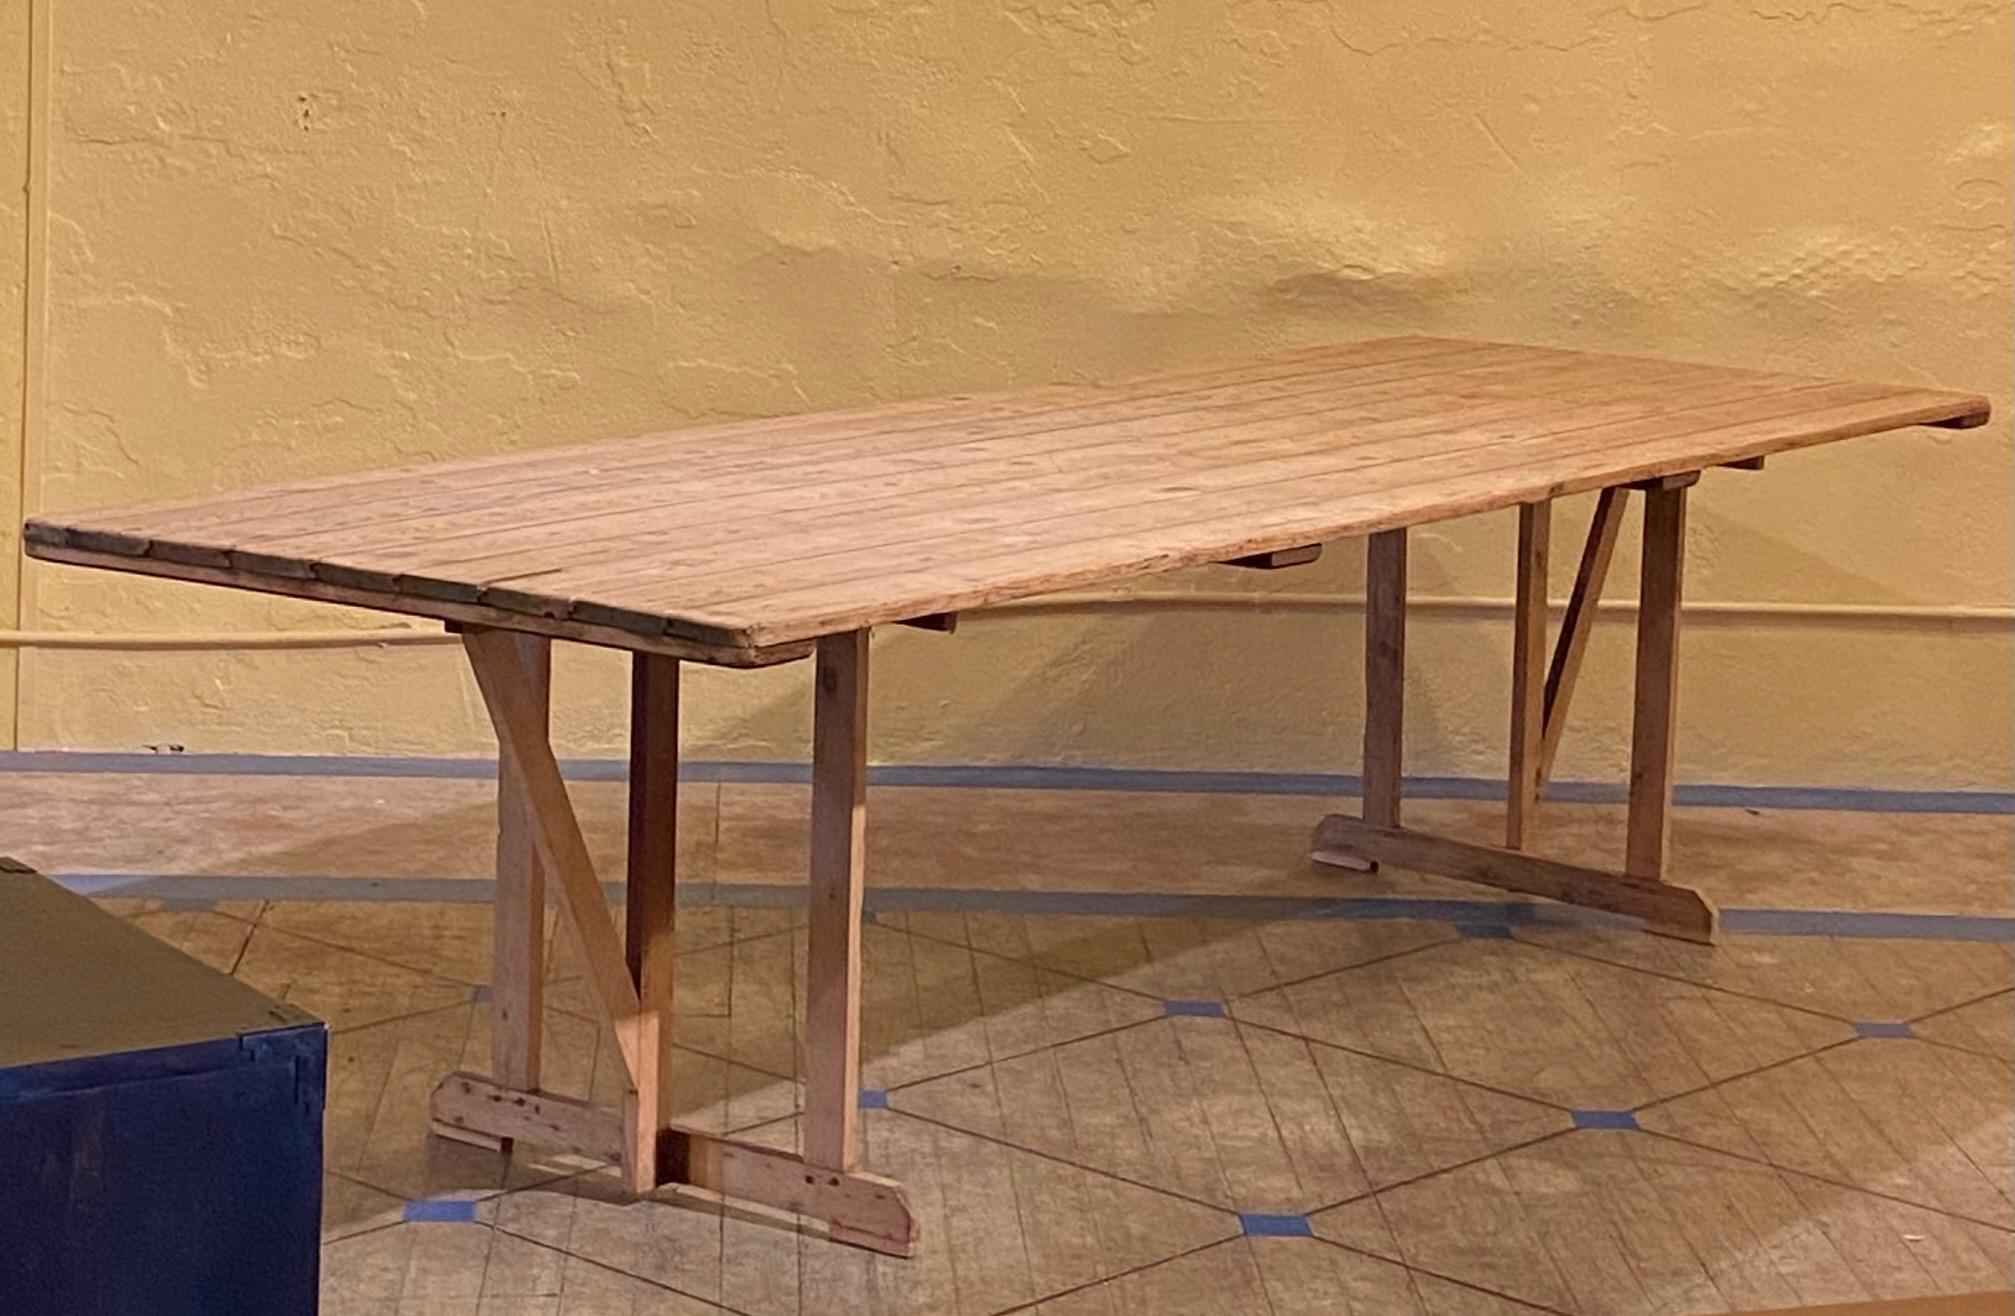 Ein interessanter alter Bauernhoftisch aus Kiefernholz.
Ein großer, antiker, tragbarer Tisch, der ursprünglich während der Erntezeit in den Obstgärten oder auf den Feldern aufgestellt wurde, um die Arbeiter zu bedienen.
In ausgezeichnetem antiken